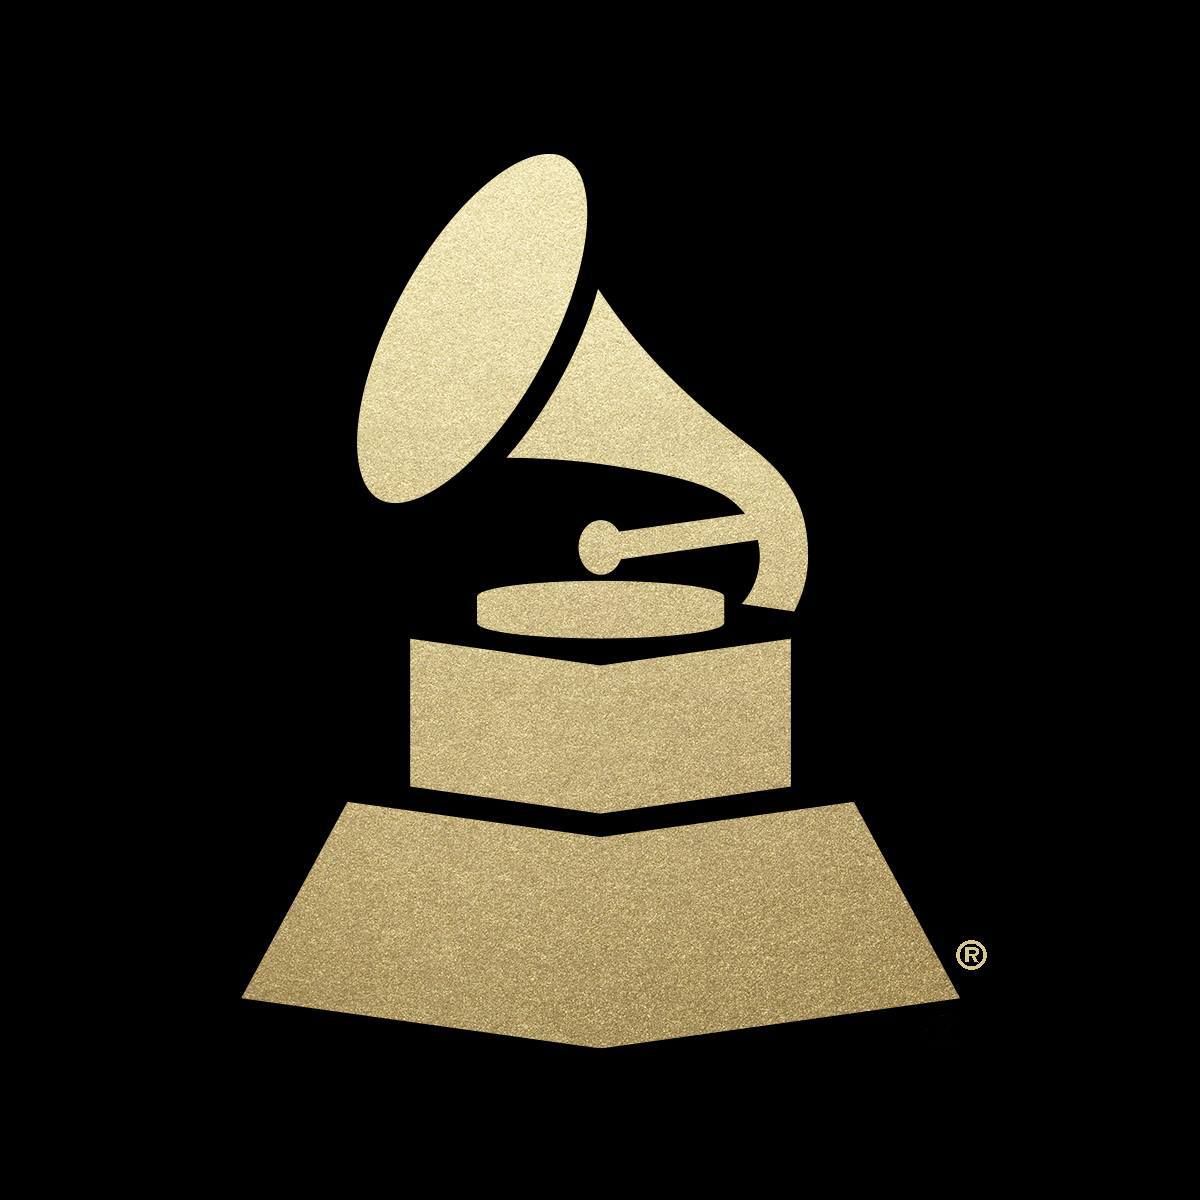 Grammy Awards: Nominierungen in der Kategorie "Best Metal Performance" bekanntgegeben